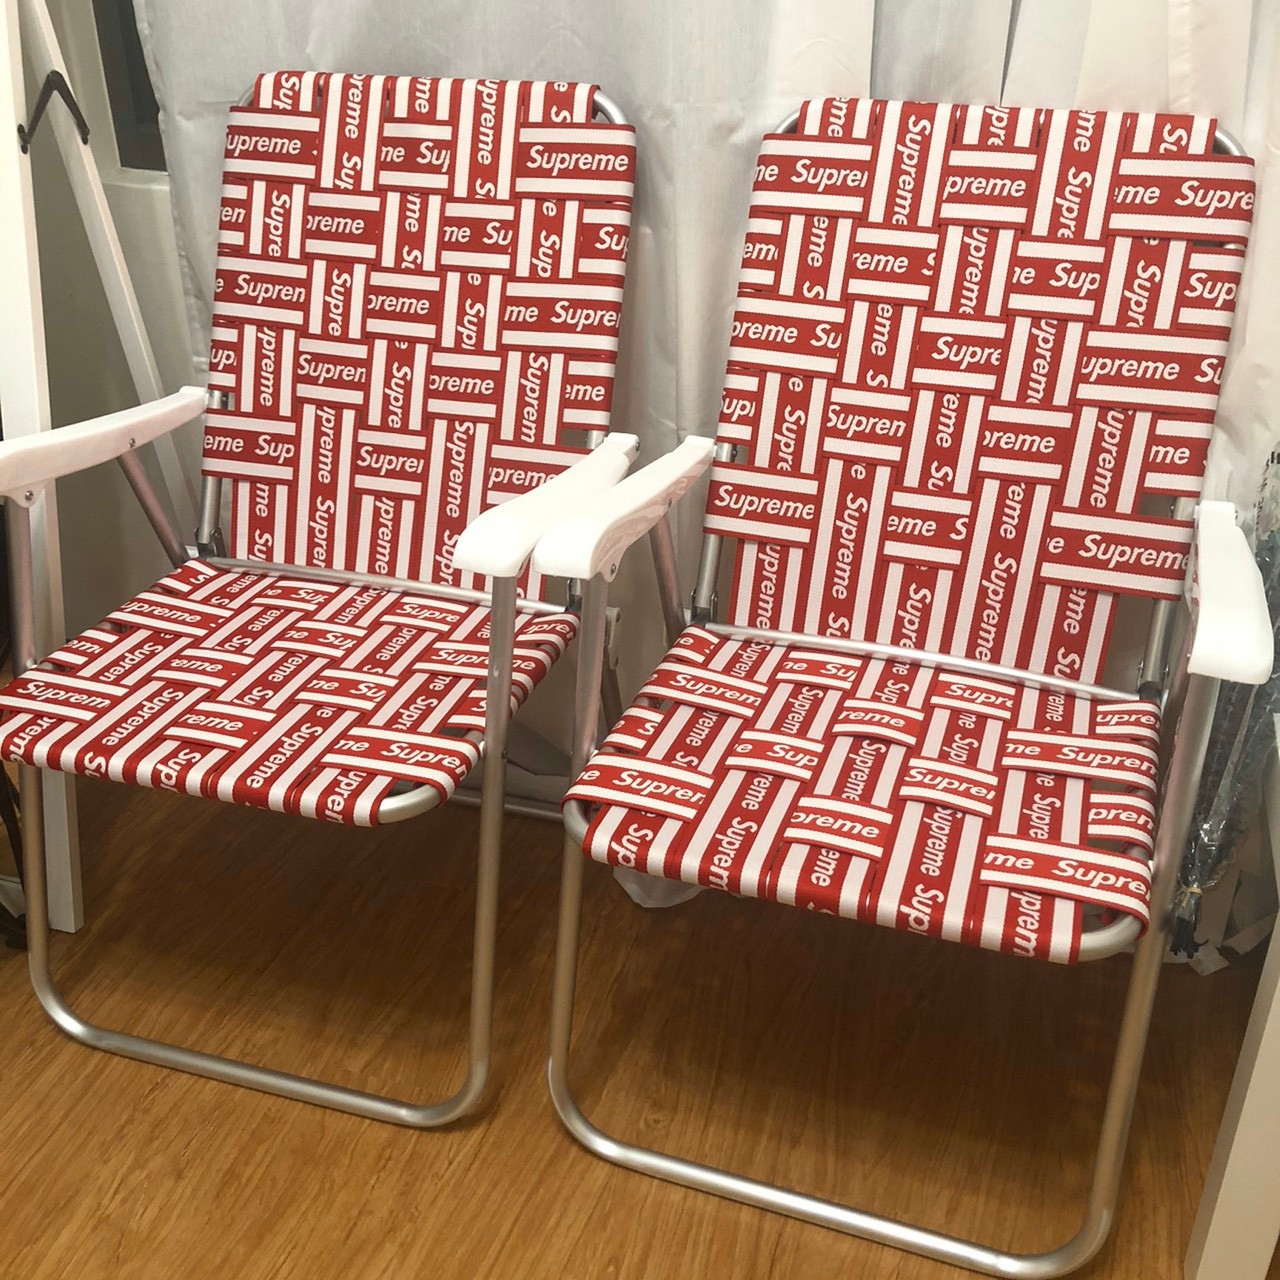 [現貨] Supreme 20SS Lawn Chair 紅色 躺椅 椅子 摺疊椅